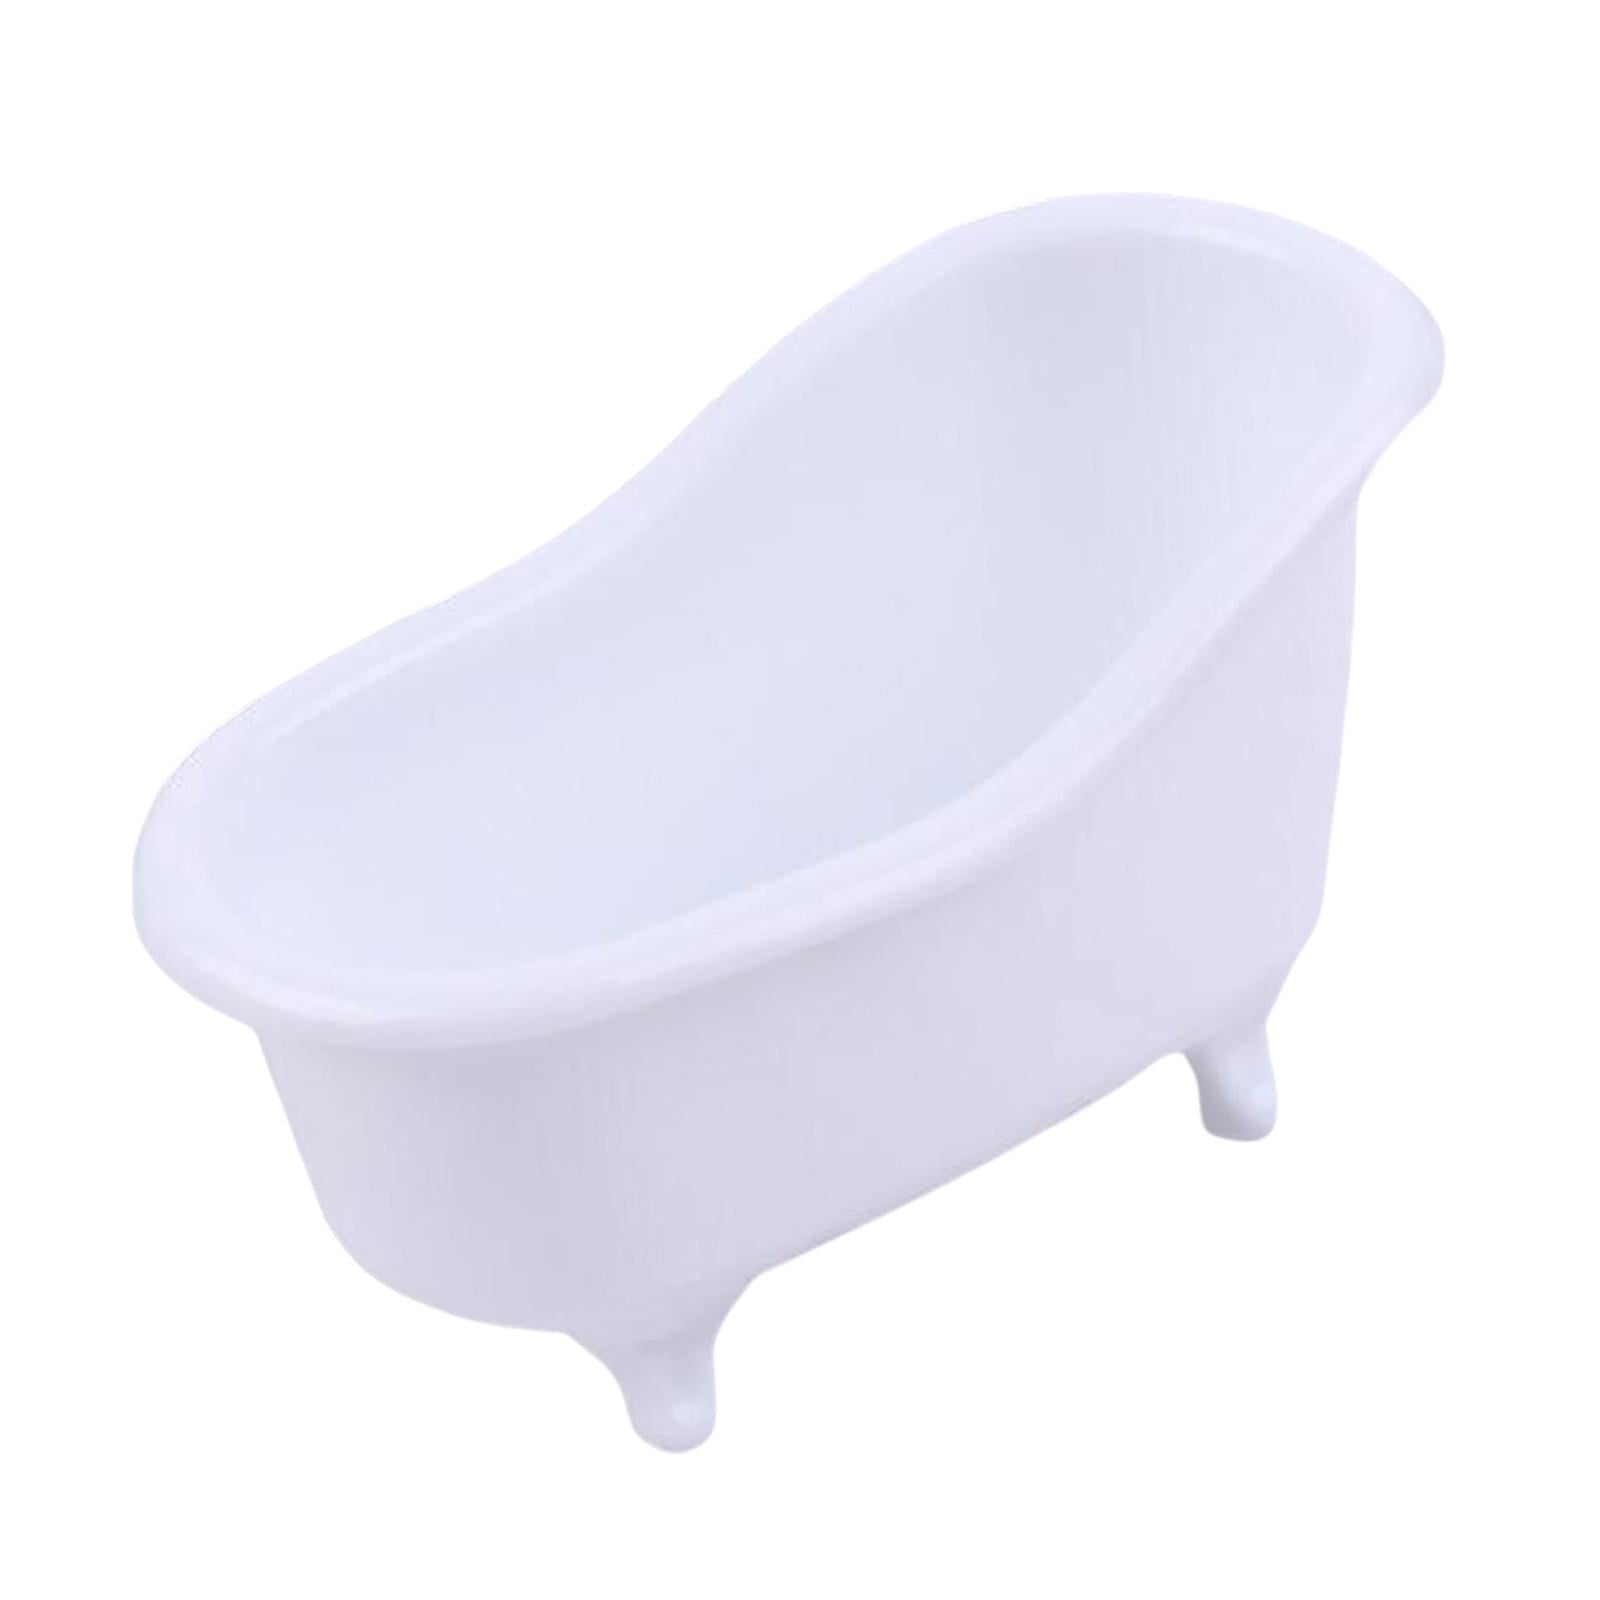 Bathroom Soap Holder – JR E-COMMERCE DEALS